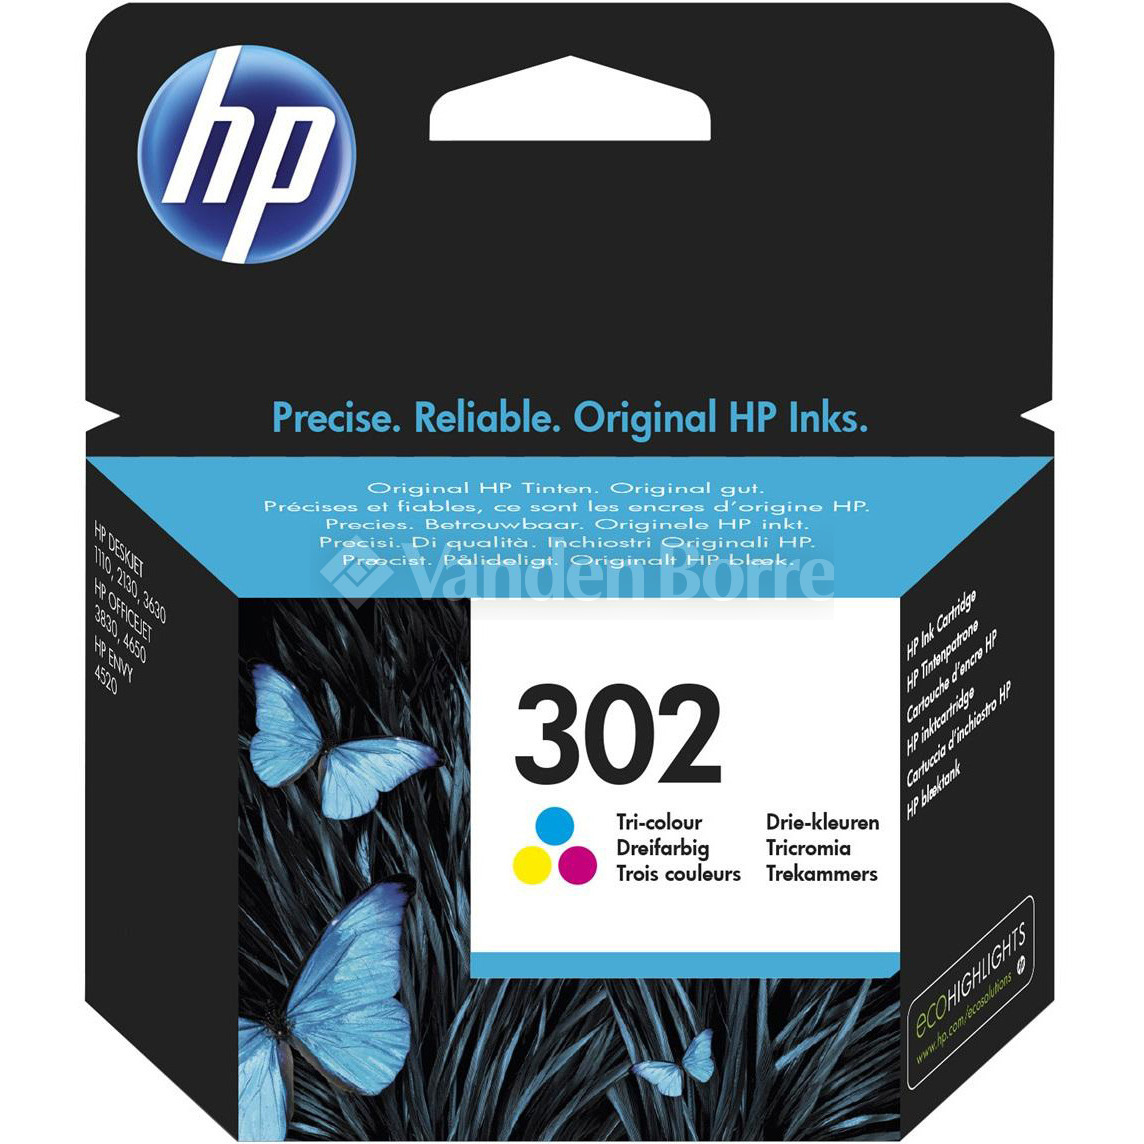 Prik uitslag tolerantie HP INKTCARTRIDGE 302 (3 COLORS) - HP Instant Ink | Vanden Borre